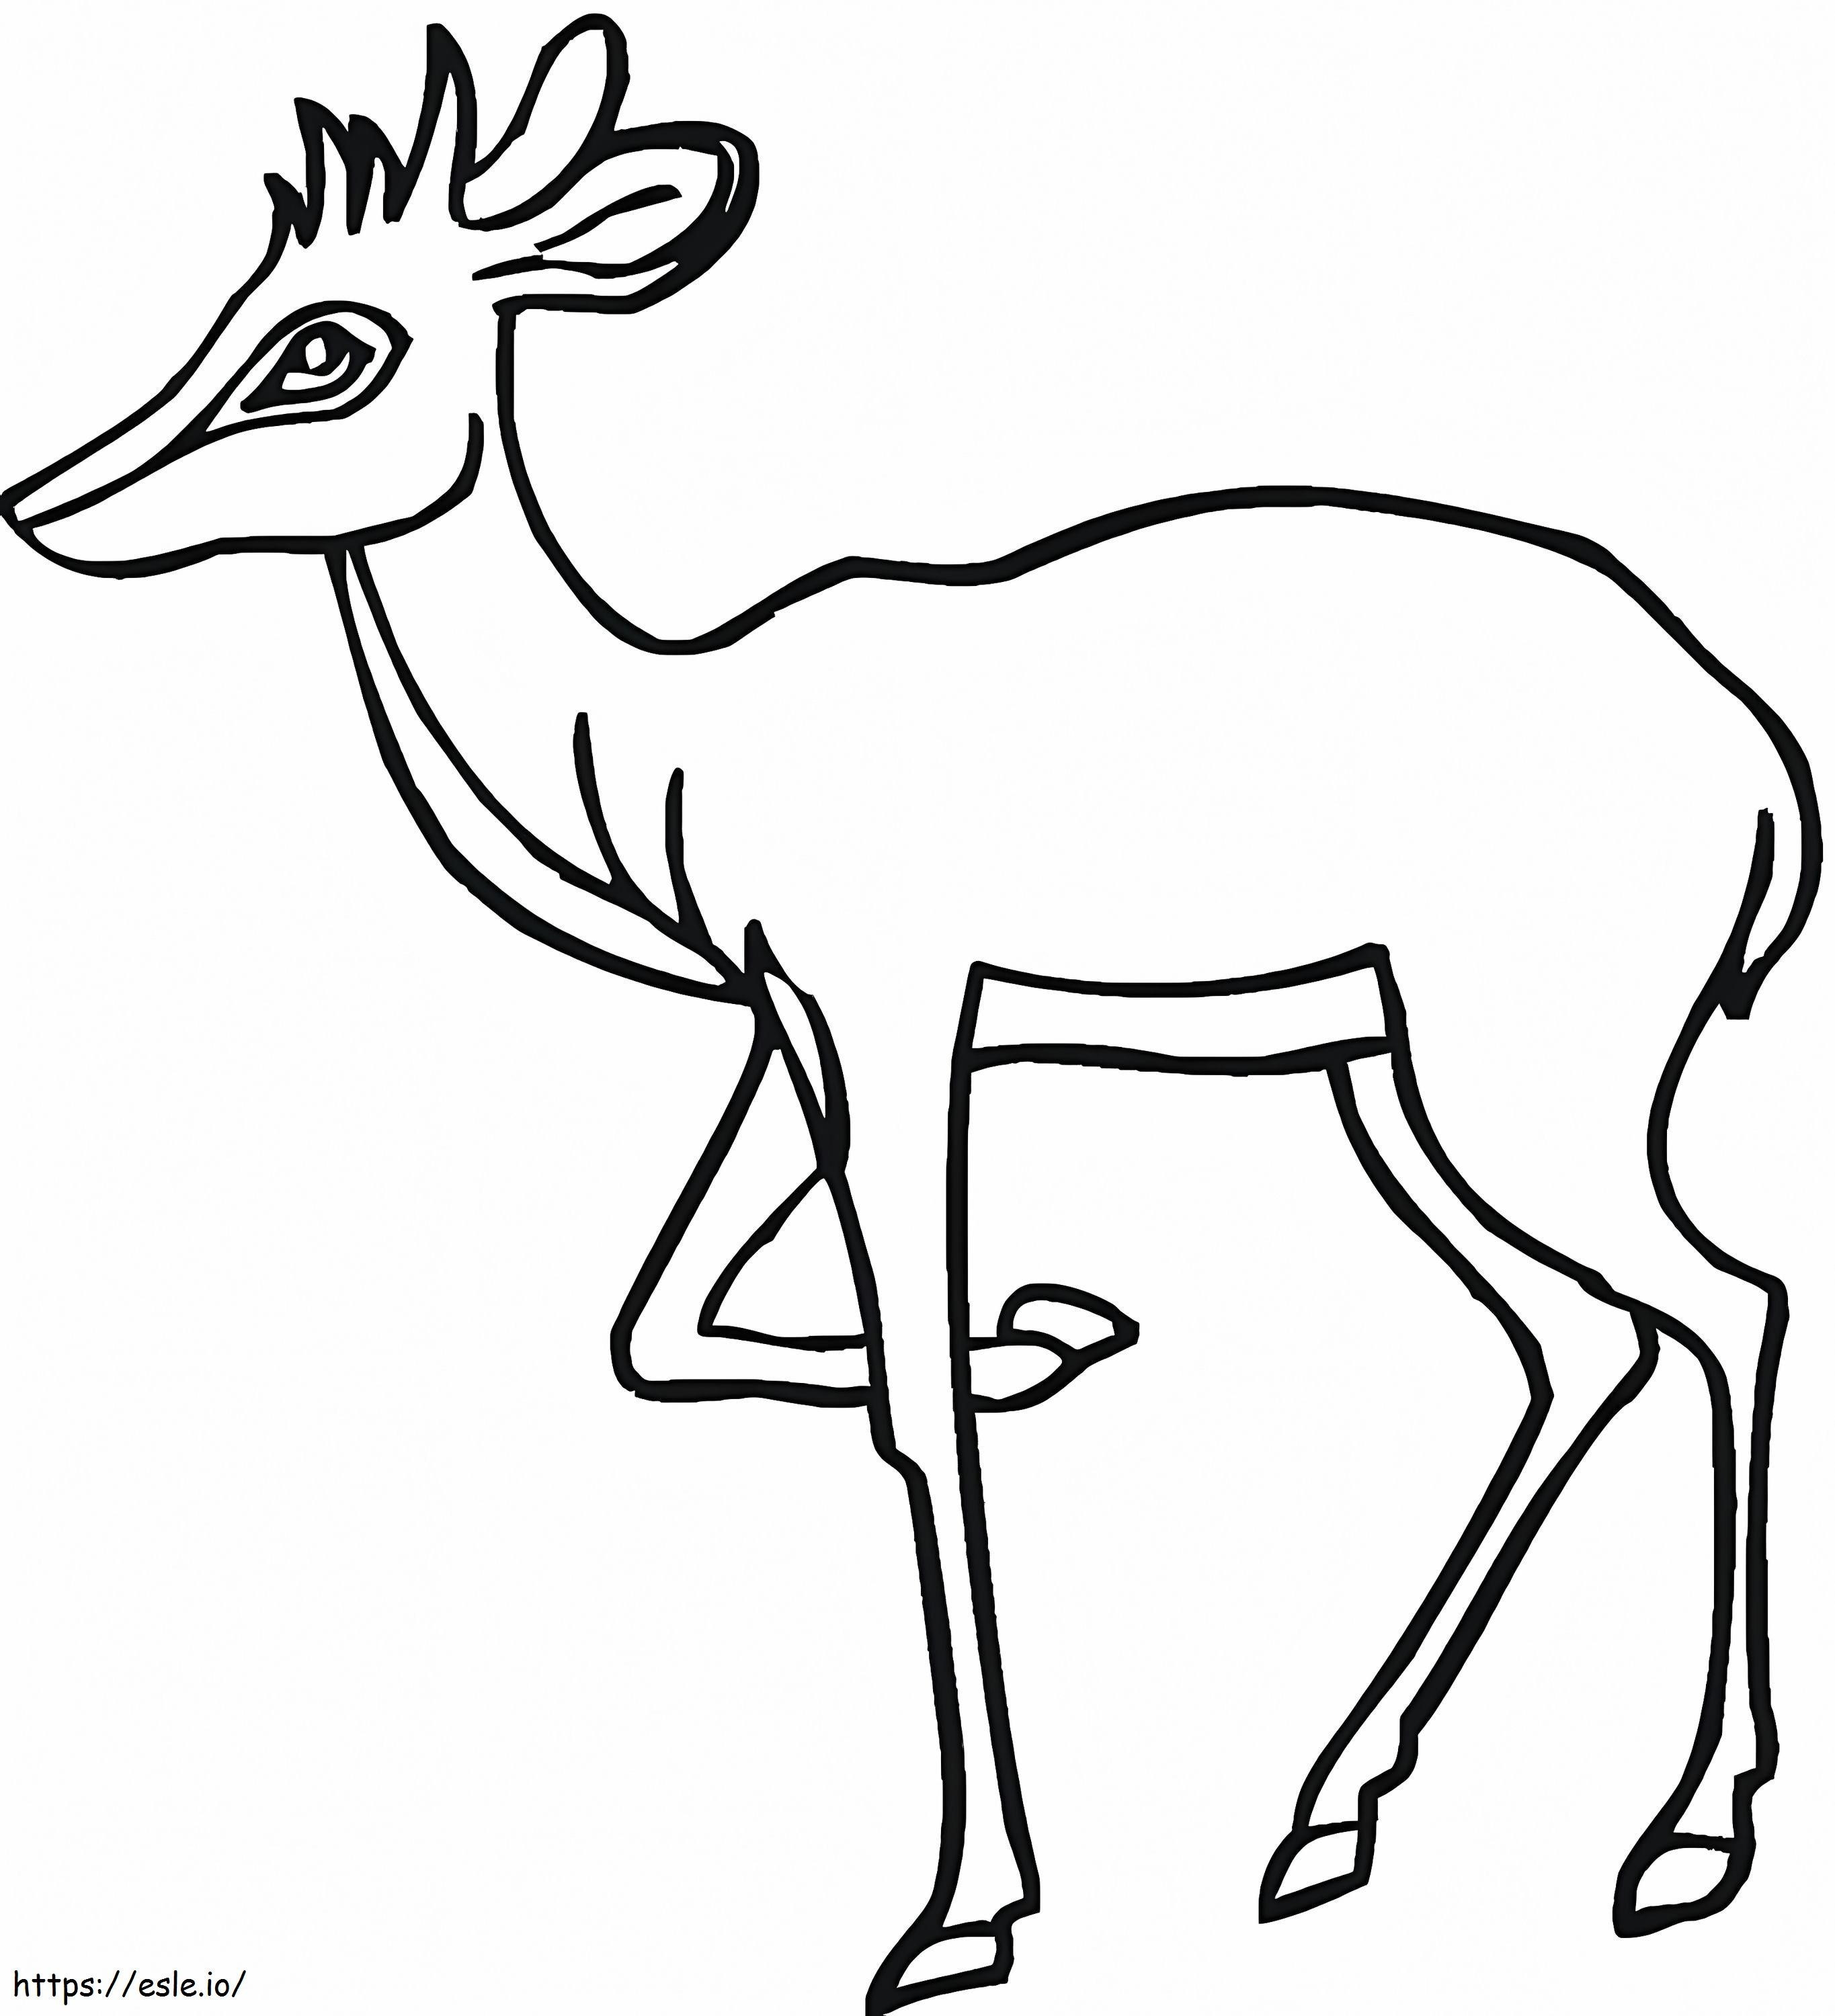 Coloriage Antilope libre à imprimer dessin